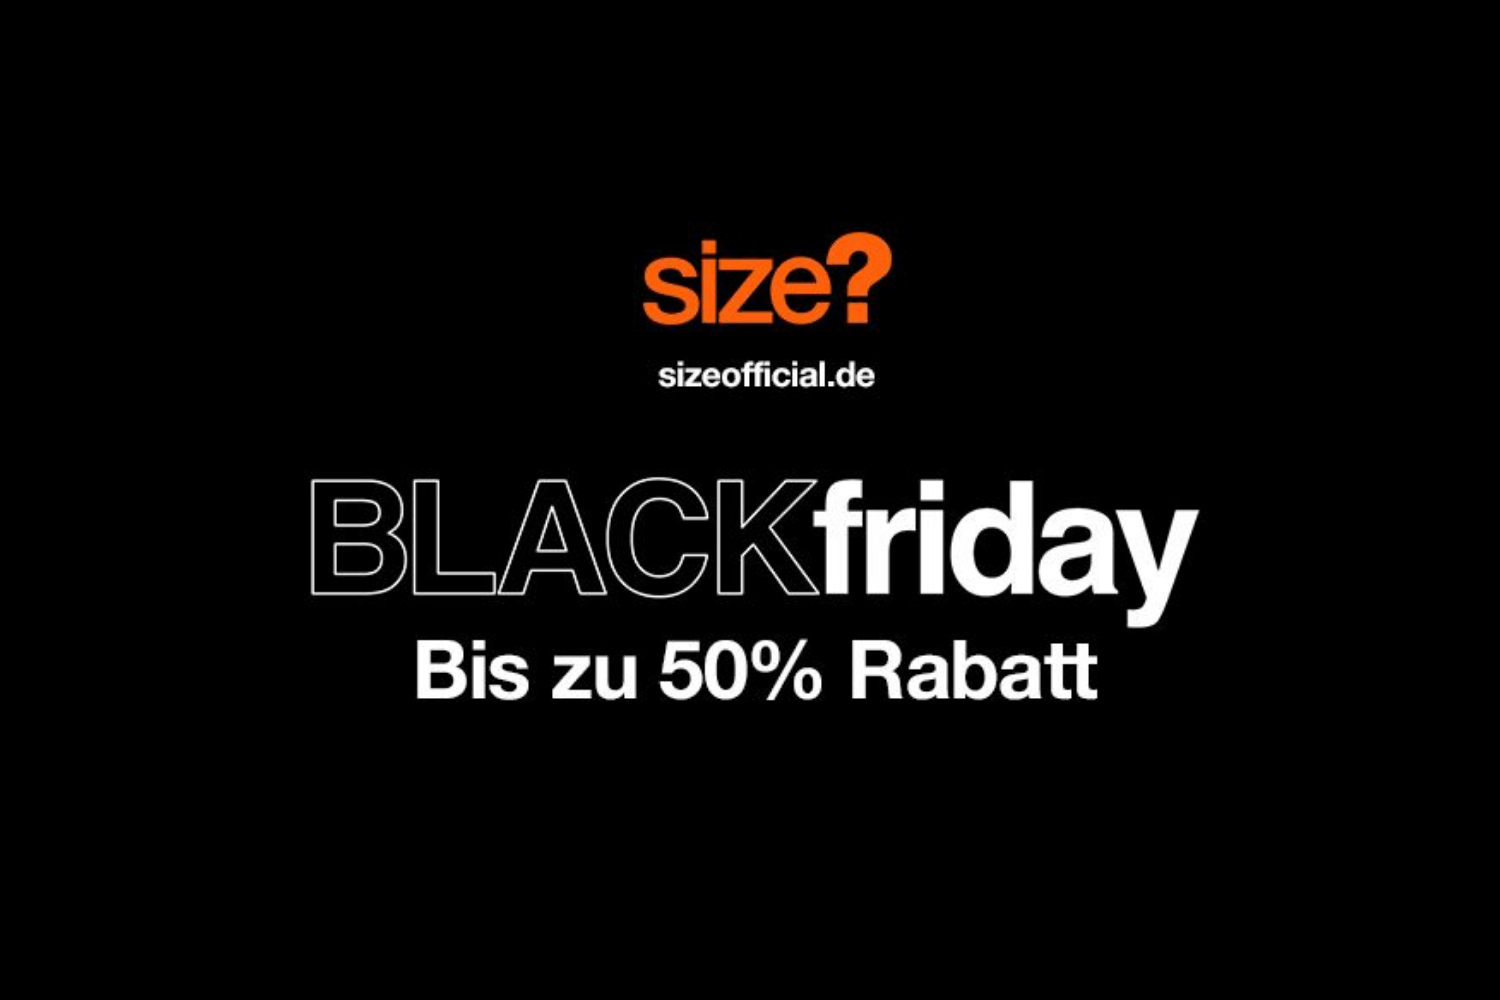 Size? feiert Black Friday mit bis zu 50% Rabatt